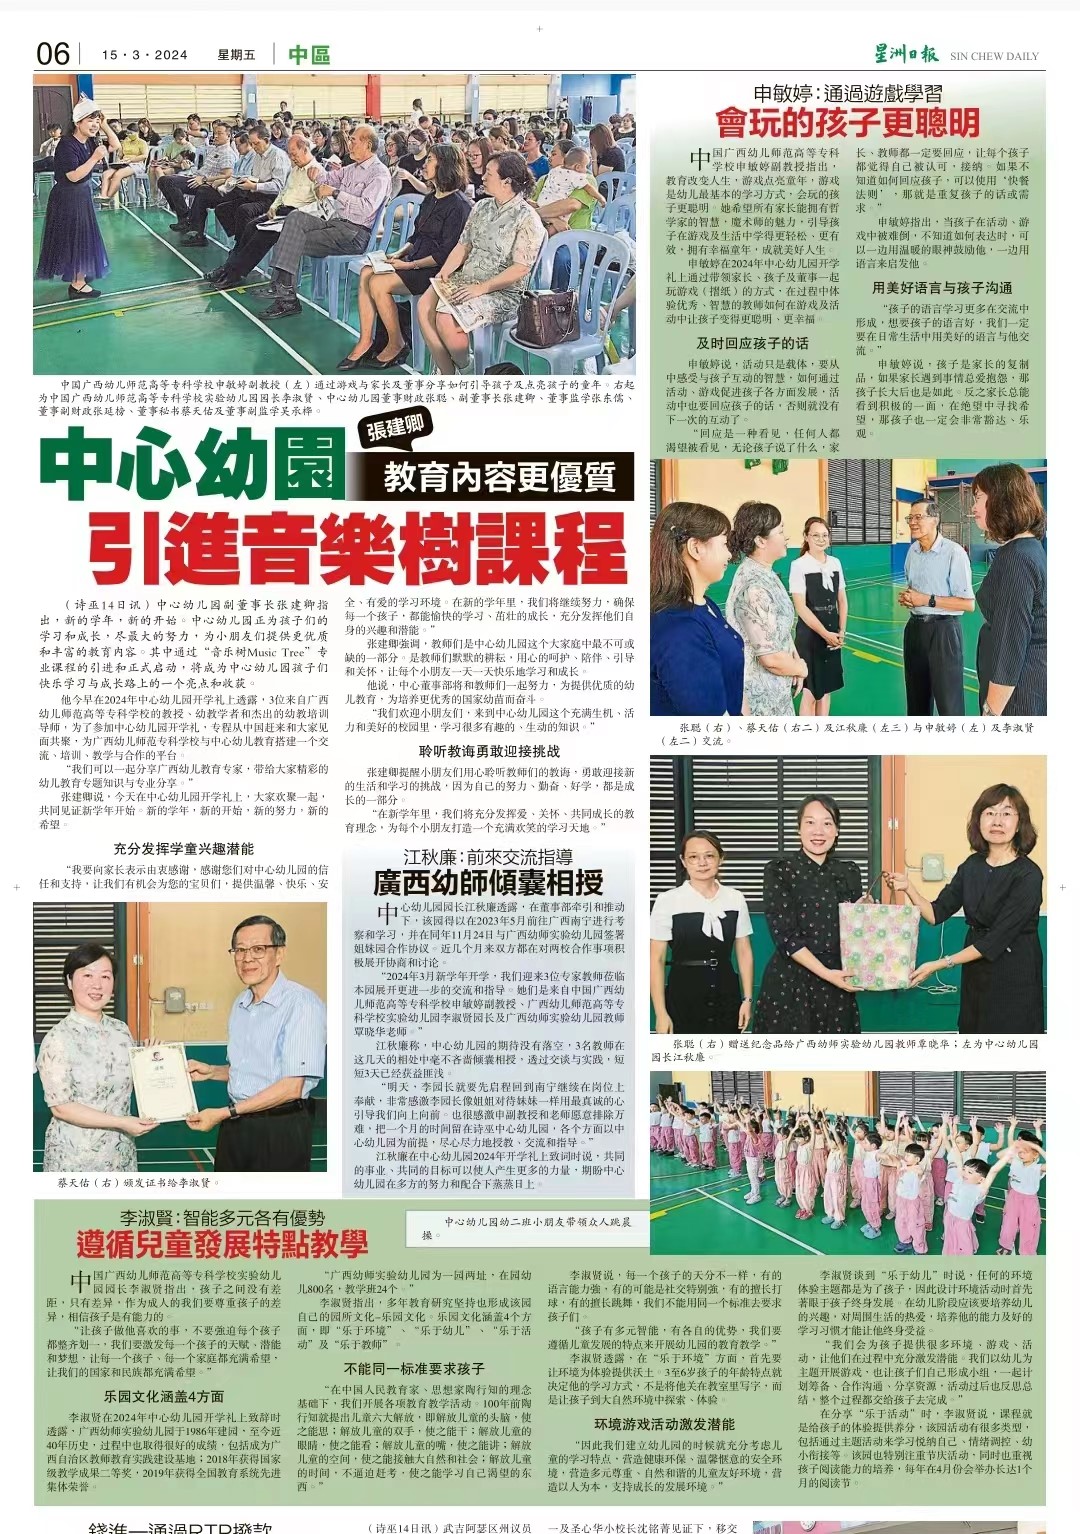 马来西亚《星洲日报》3月15日整版报道我校教师赴马来西亚幼儿园开展合作交流